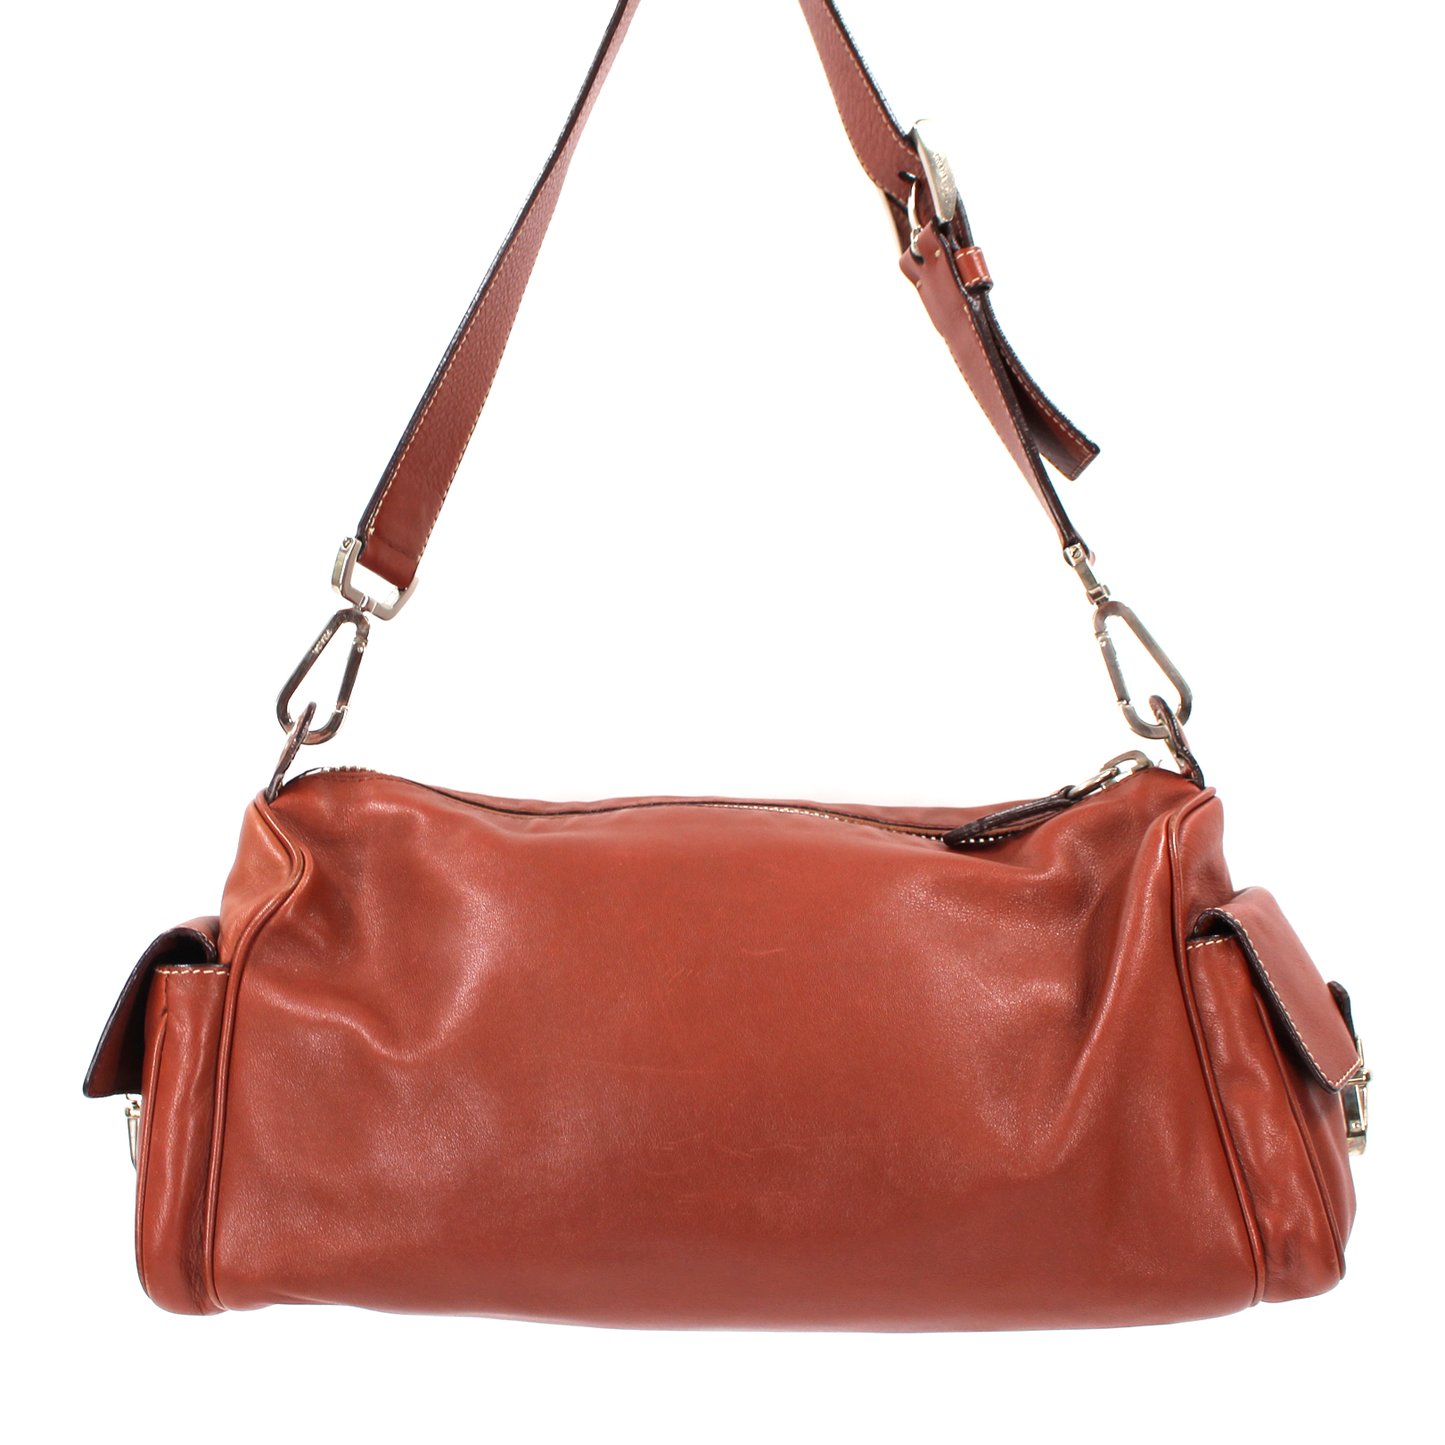 Prada Leather Hobo Handbag